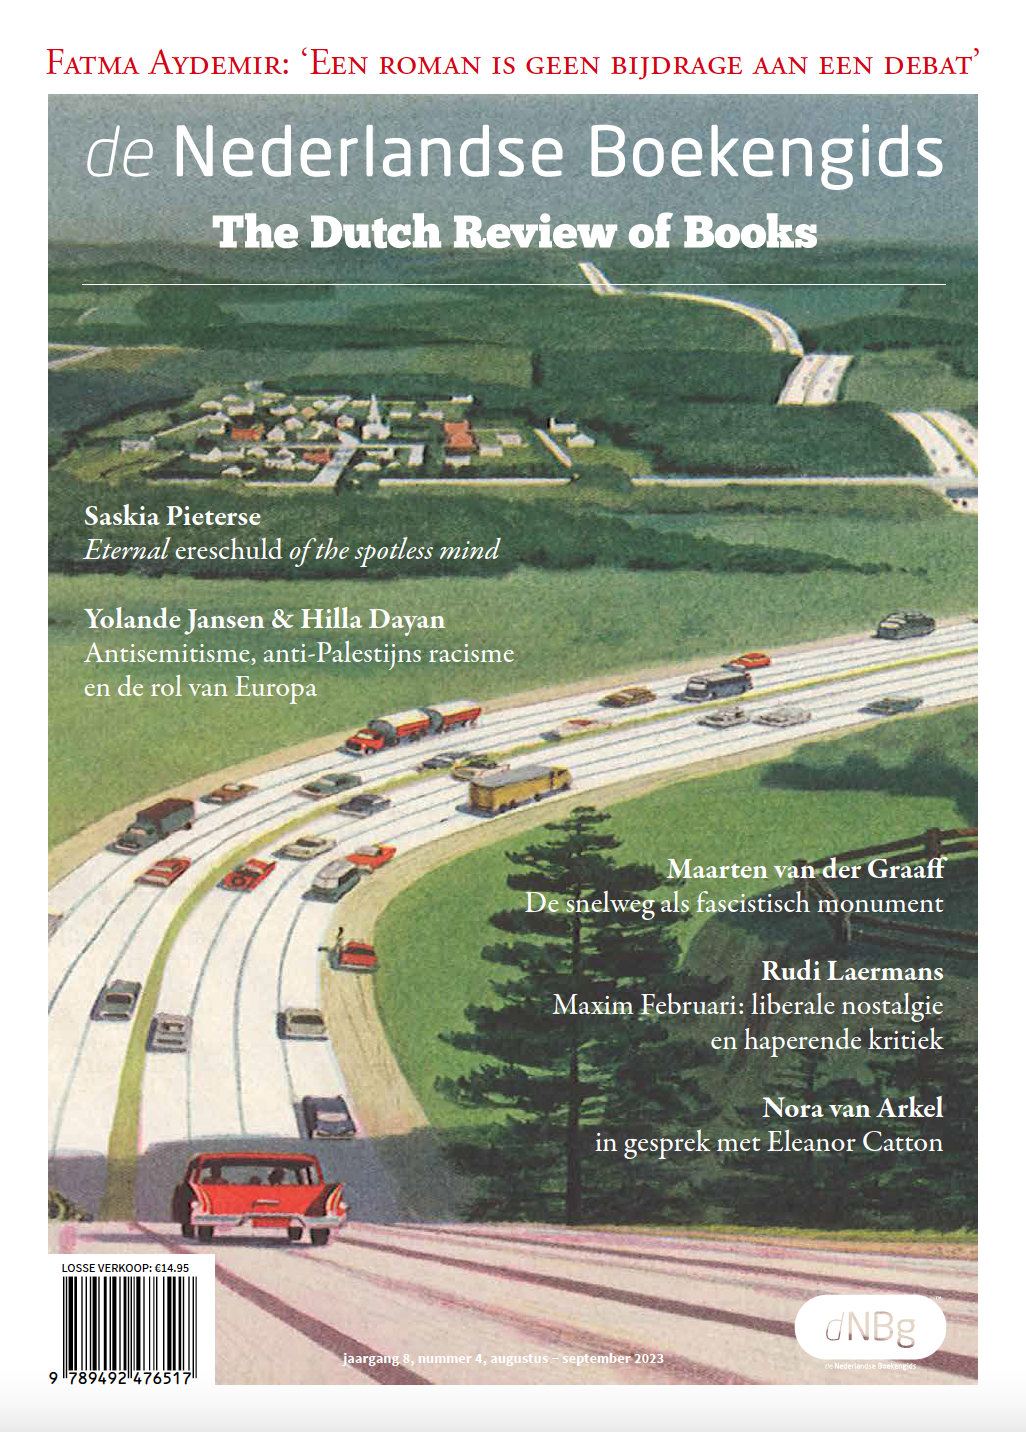 Archief Issue de Nederlandse Boekengids de Nederlandse Boekengids